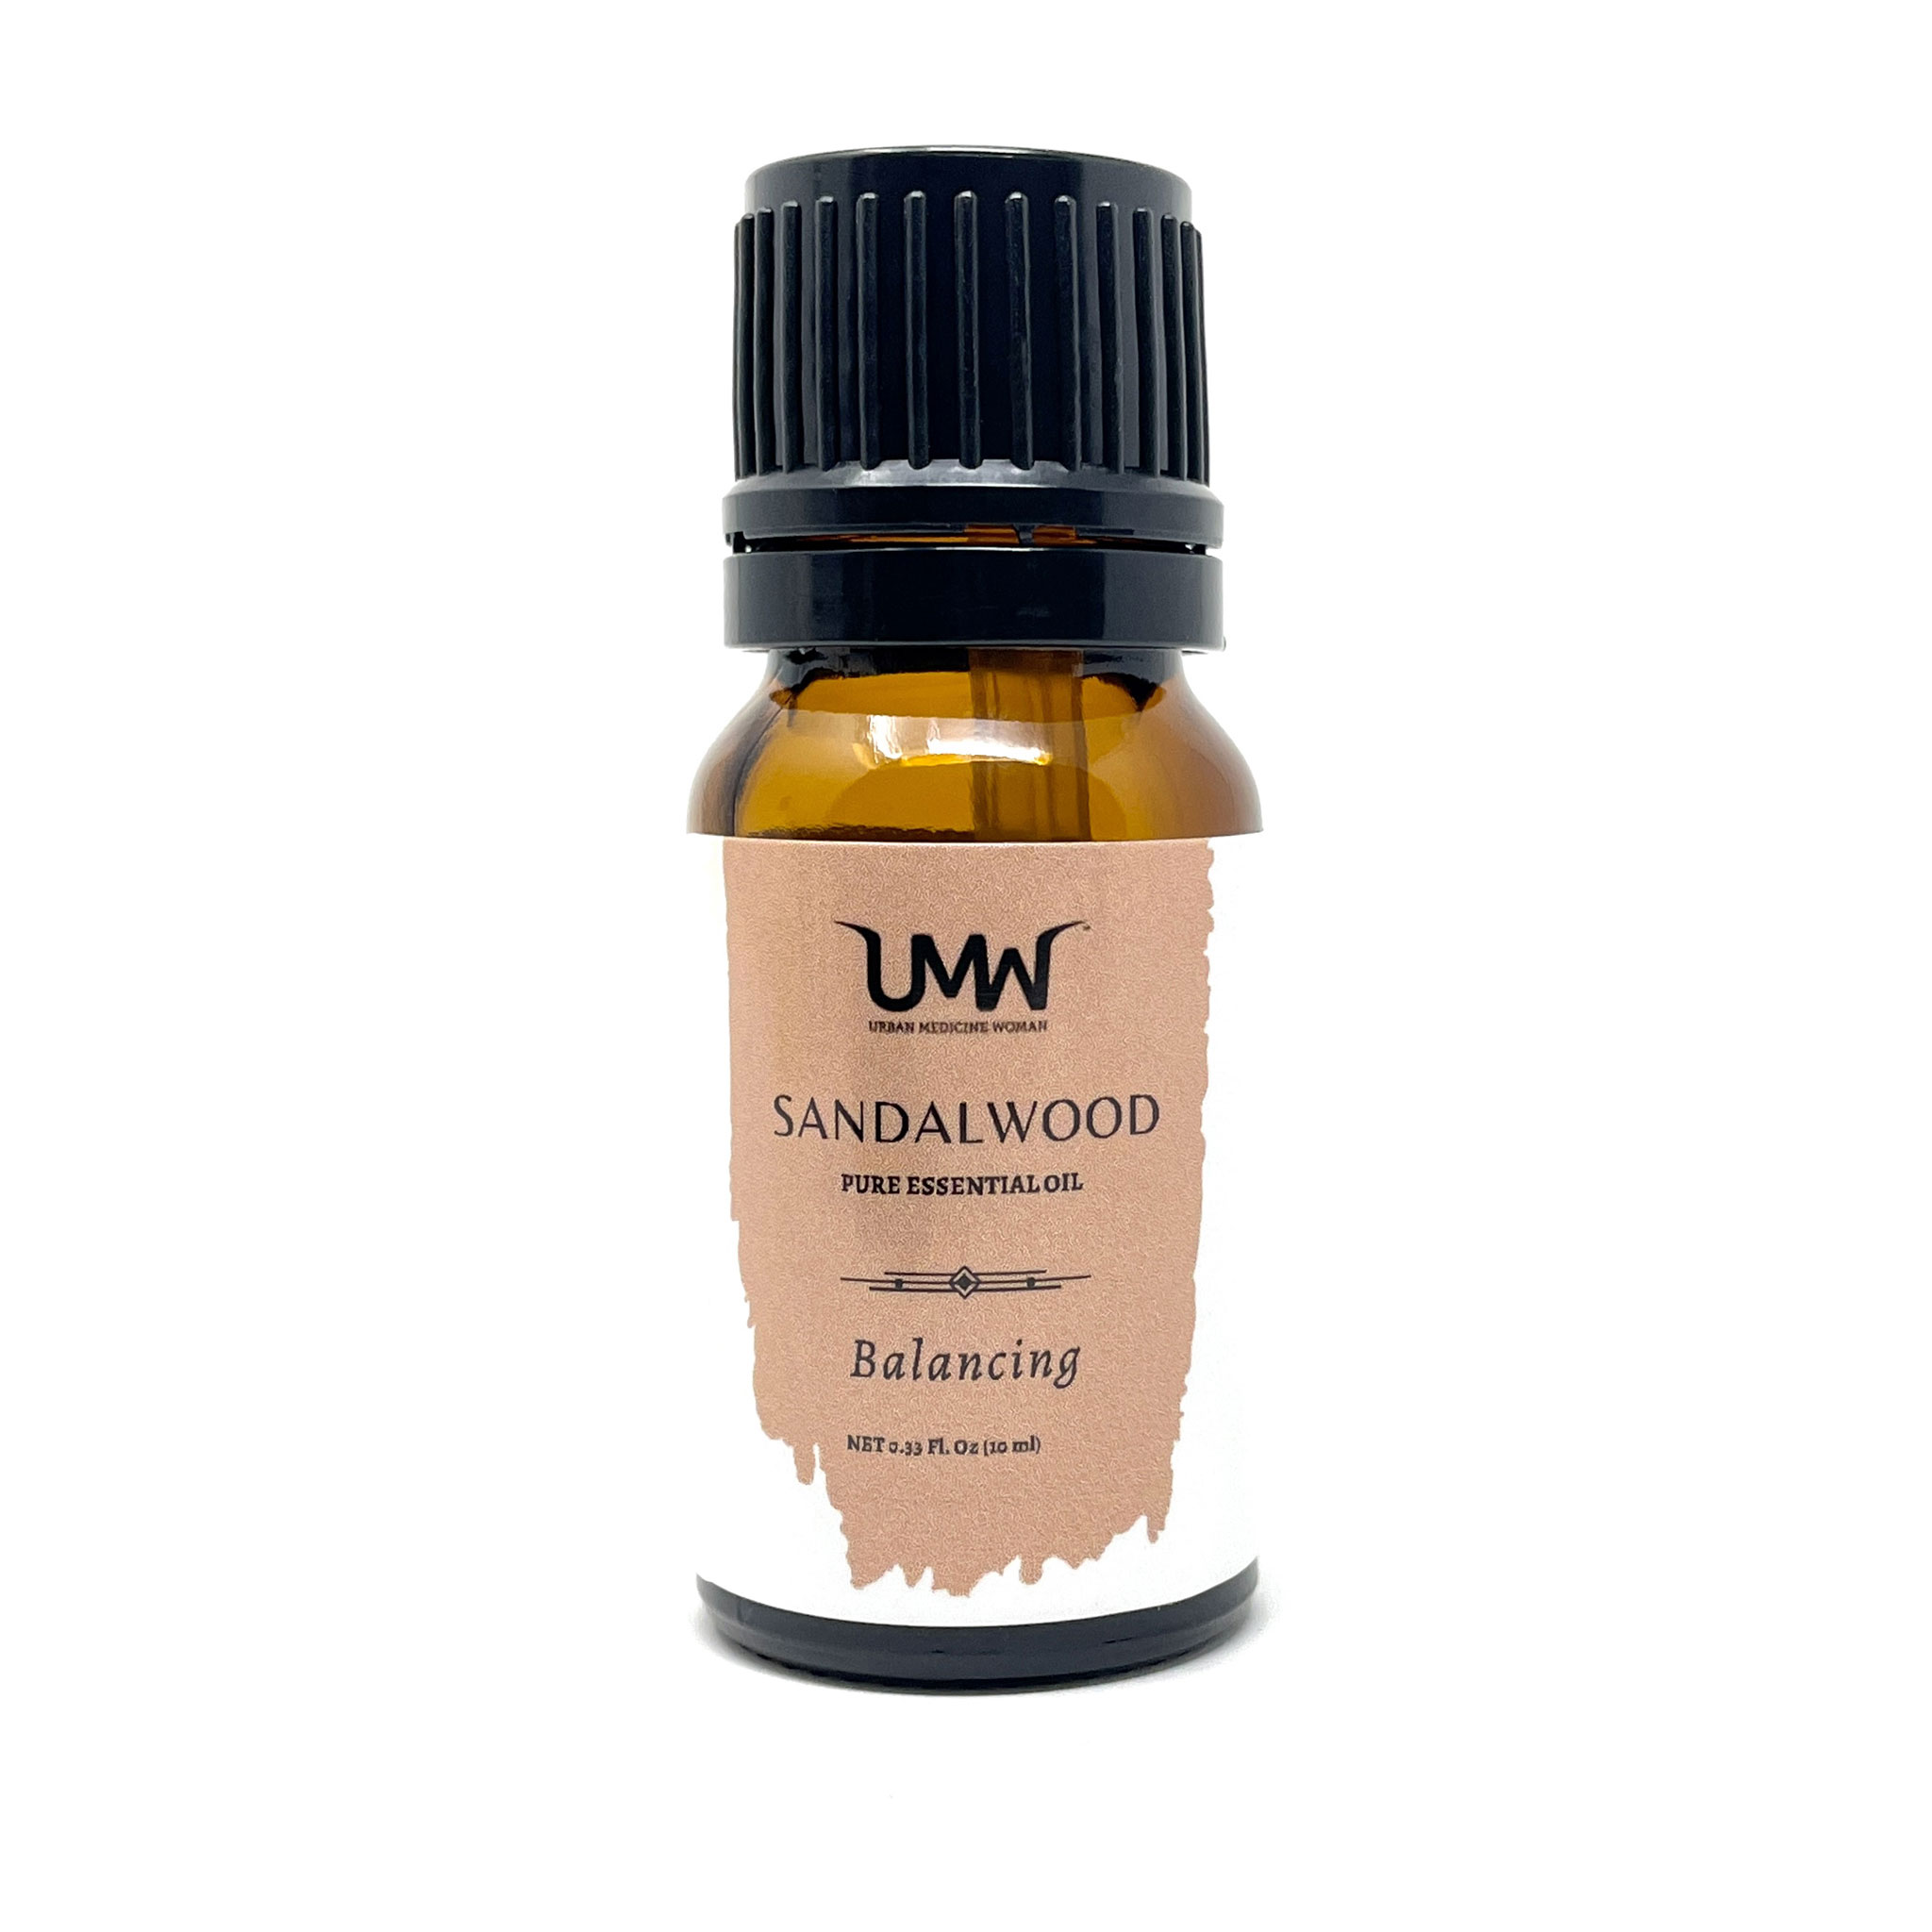 UMW Sandalwood Essential Oil